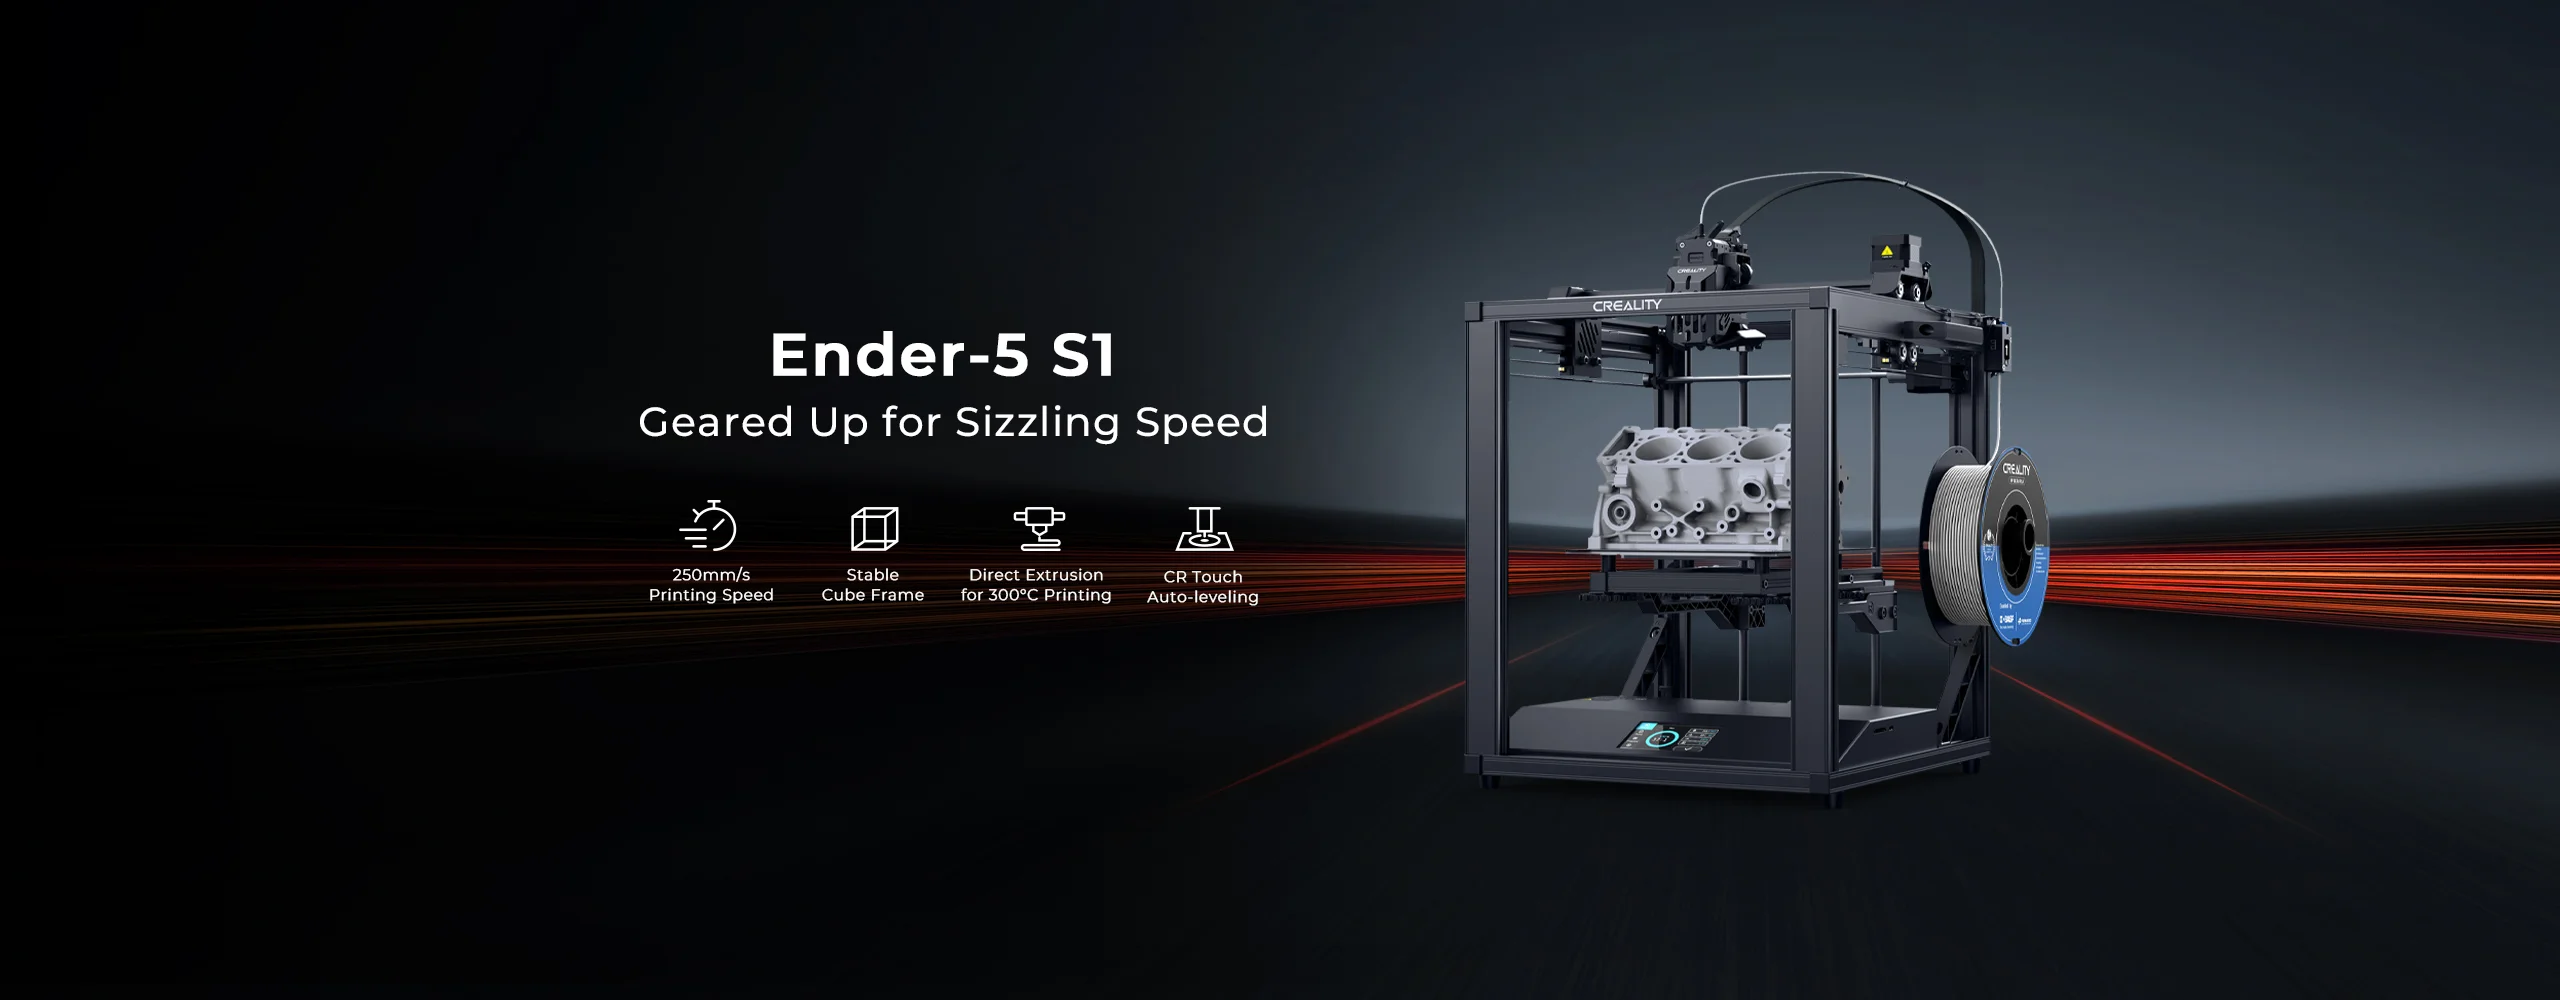 Ender-5 S1 3D Printer - Creality 3D